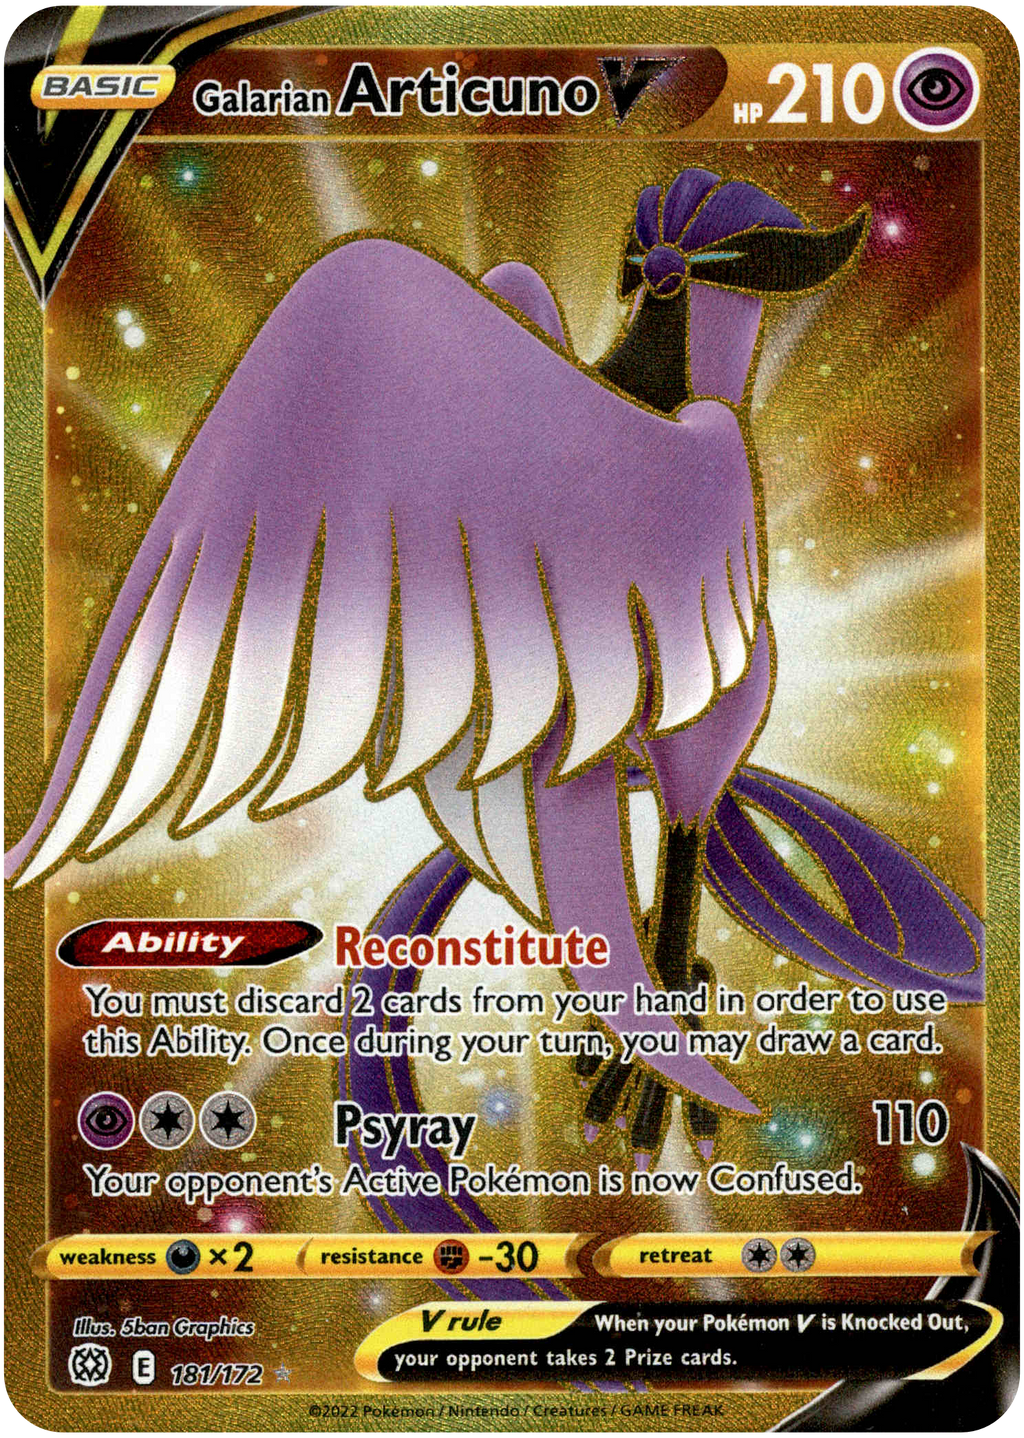 Raikou V - 048/172 - Ultra Rare - Brilliant Stars - Pokemon Card